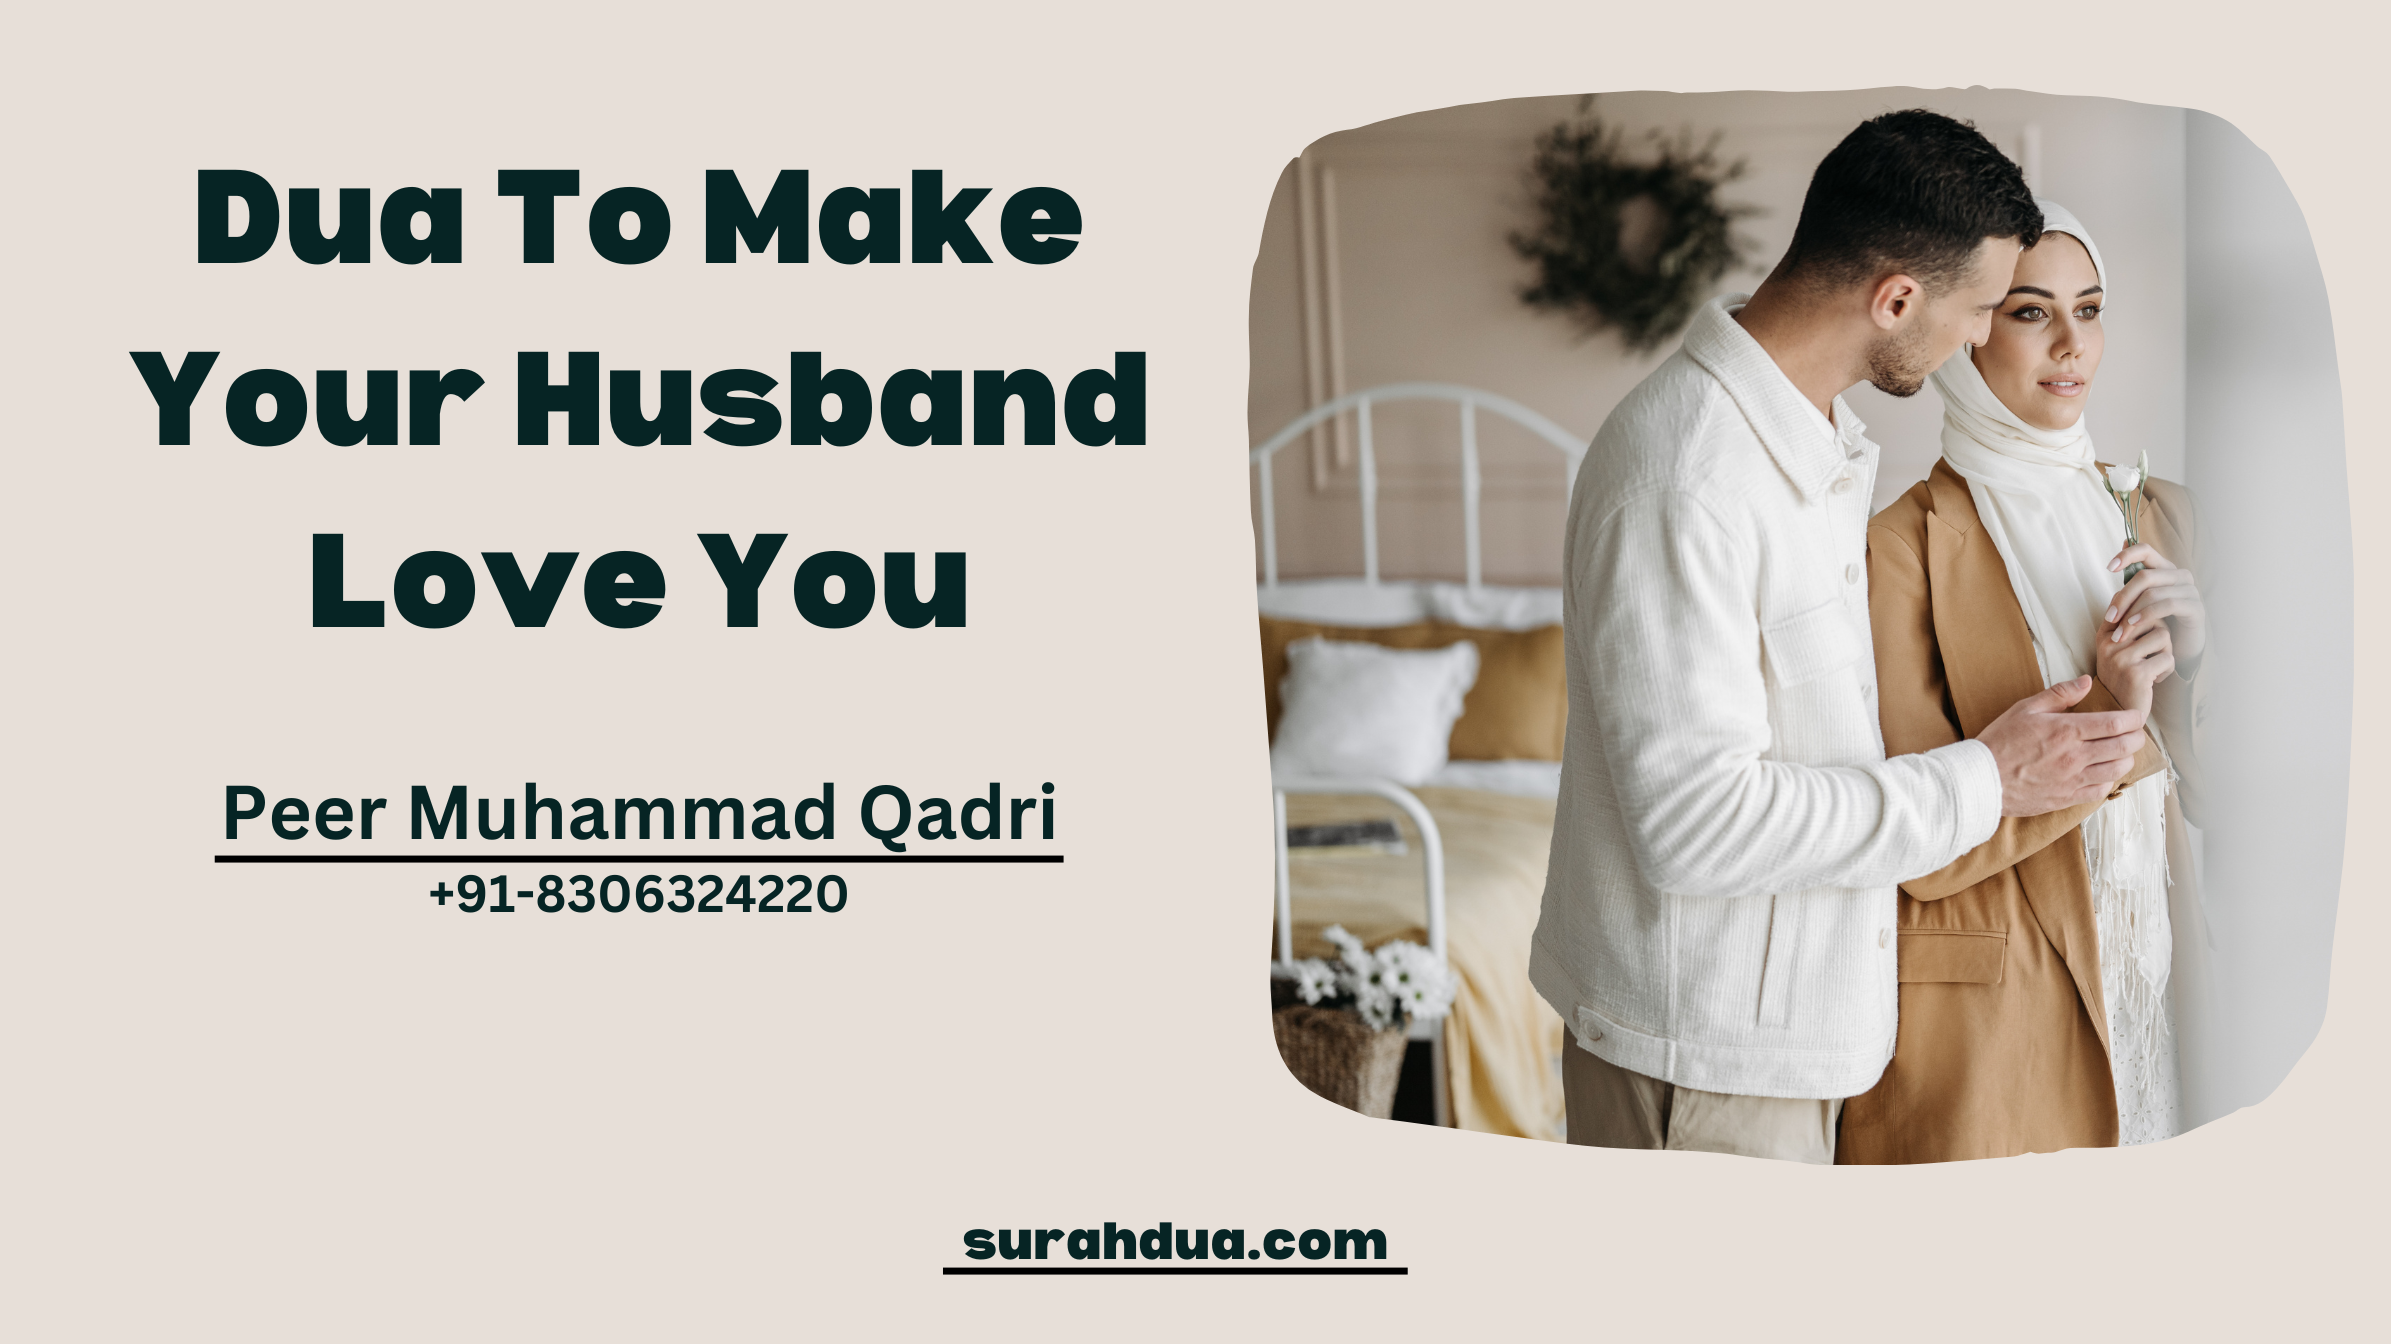 Dua To Make My Husband Love Me Again 100 Effective